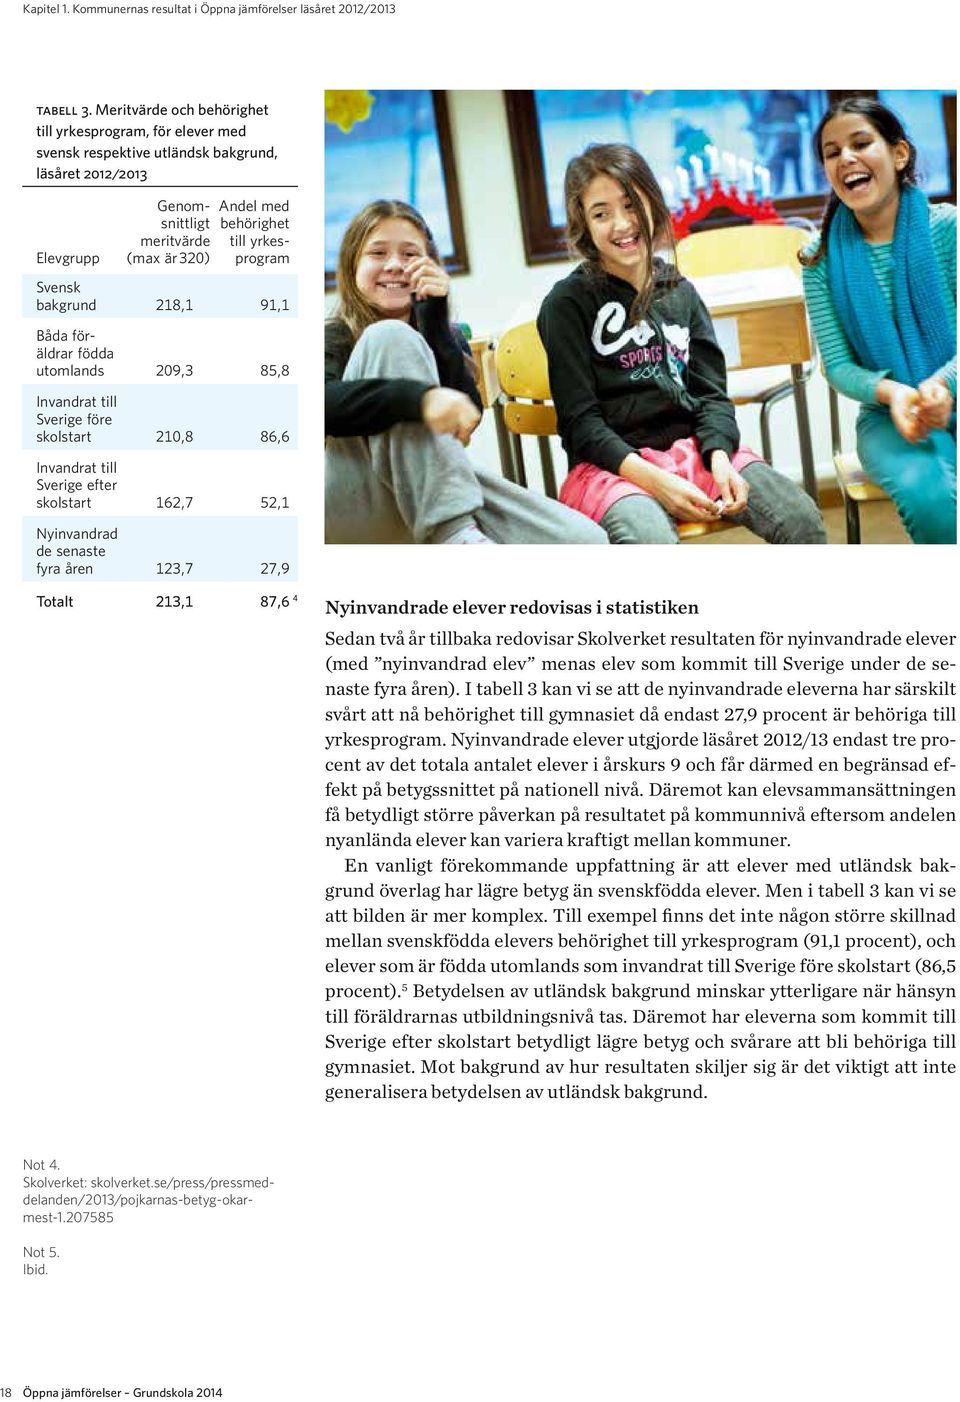 yrkesprogram Svensk bakgrund 218,1 91,1 Båda föräldrar födda utomlands 209,3 85,8 Invandrat till Sverige före skolstart 210,8 86,6 Invandrat till Sverige efter skolstart 162,7 52,1 Nyinvandrad de